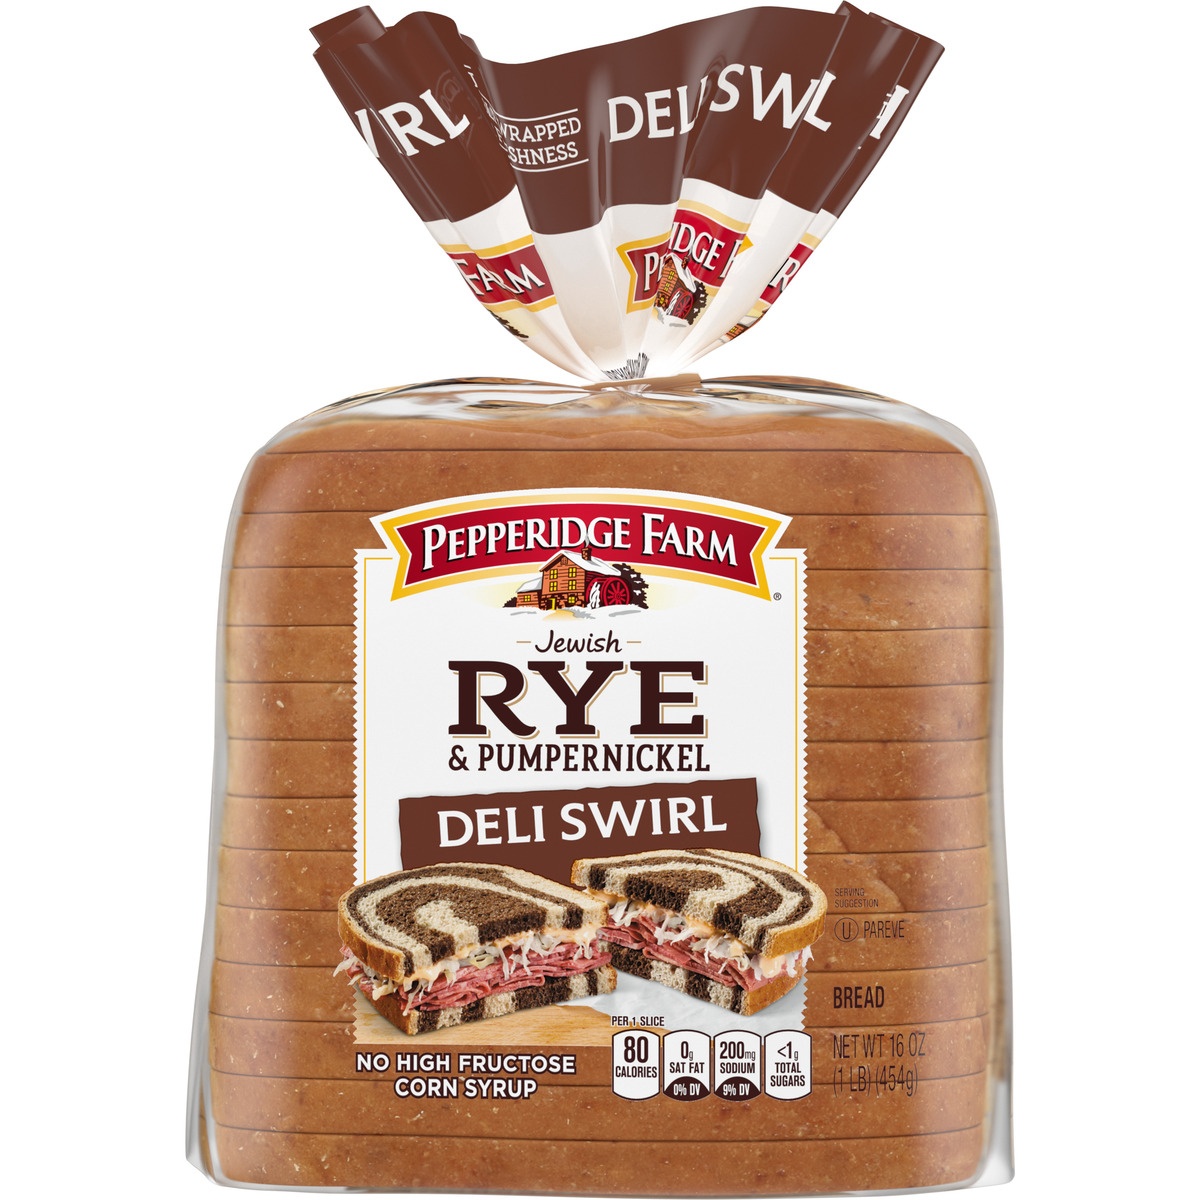 slide 1 of 11, Pepperidge Farm Rye & Pumpernickel Deli Swirl Bread, 16 oz